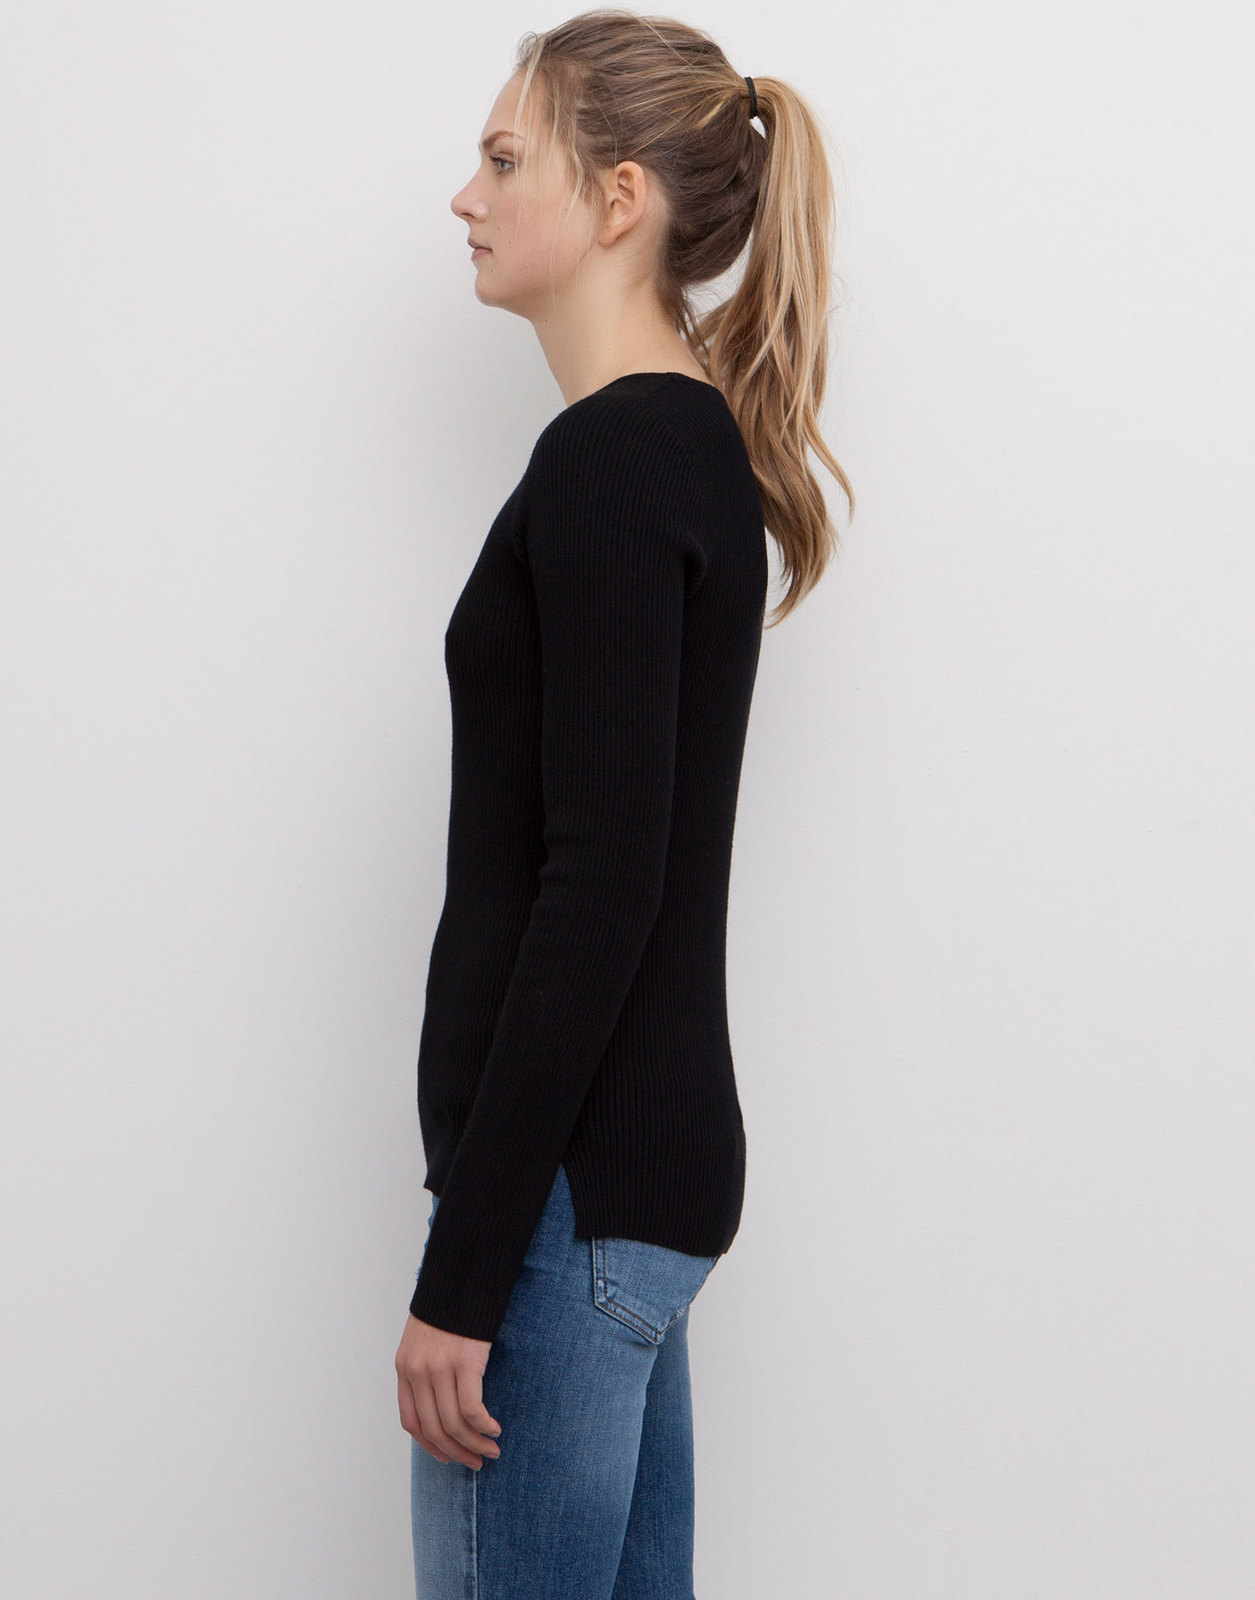 Pull and Bear bordázott kereknyakú női pulóver 2015 fotója